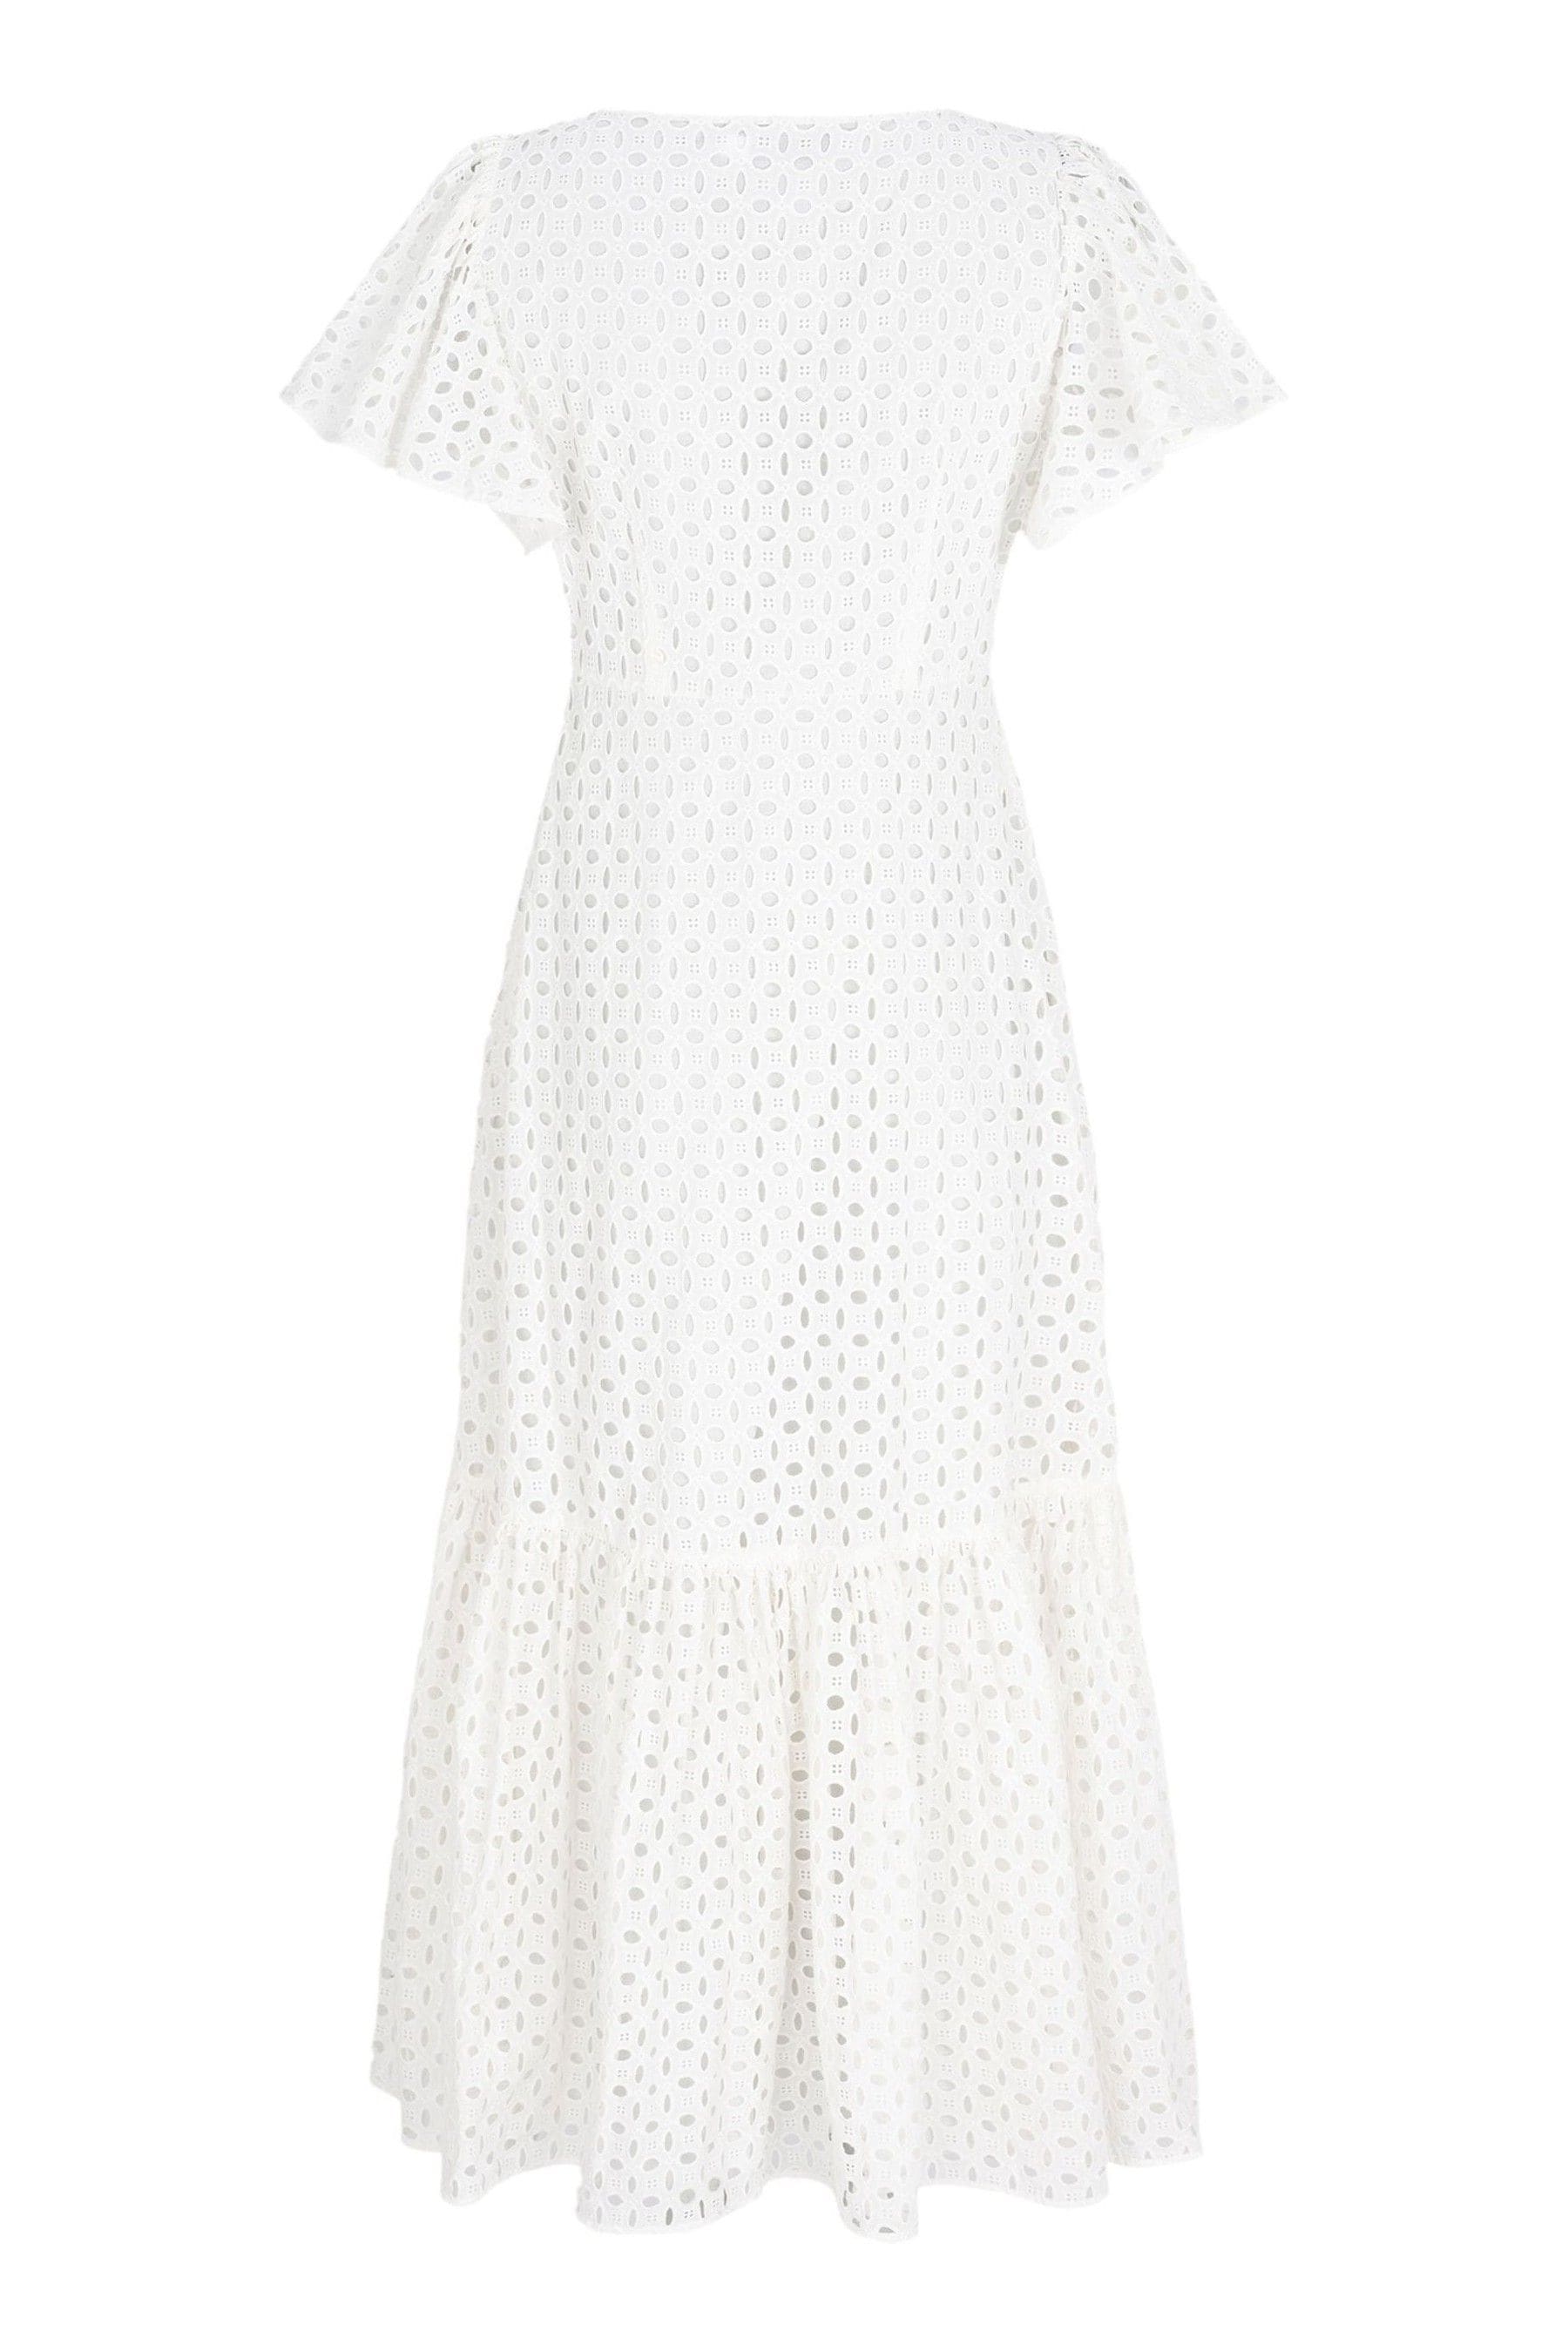 Buy Mint Velvet White Broderie Maxi Dress from Next Ireland